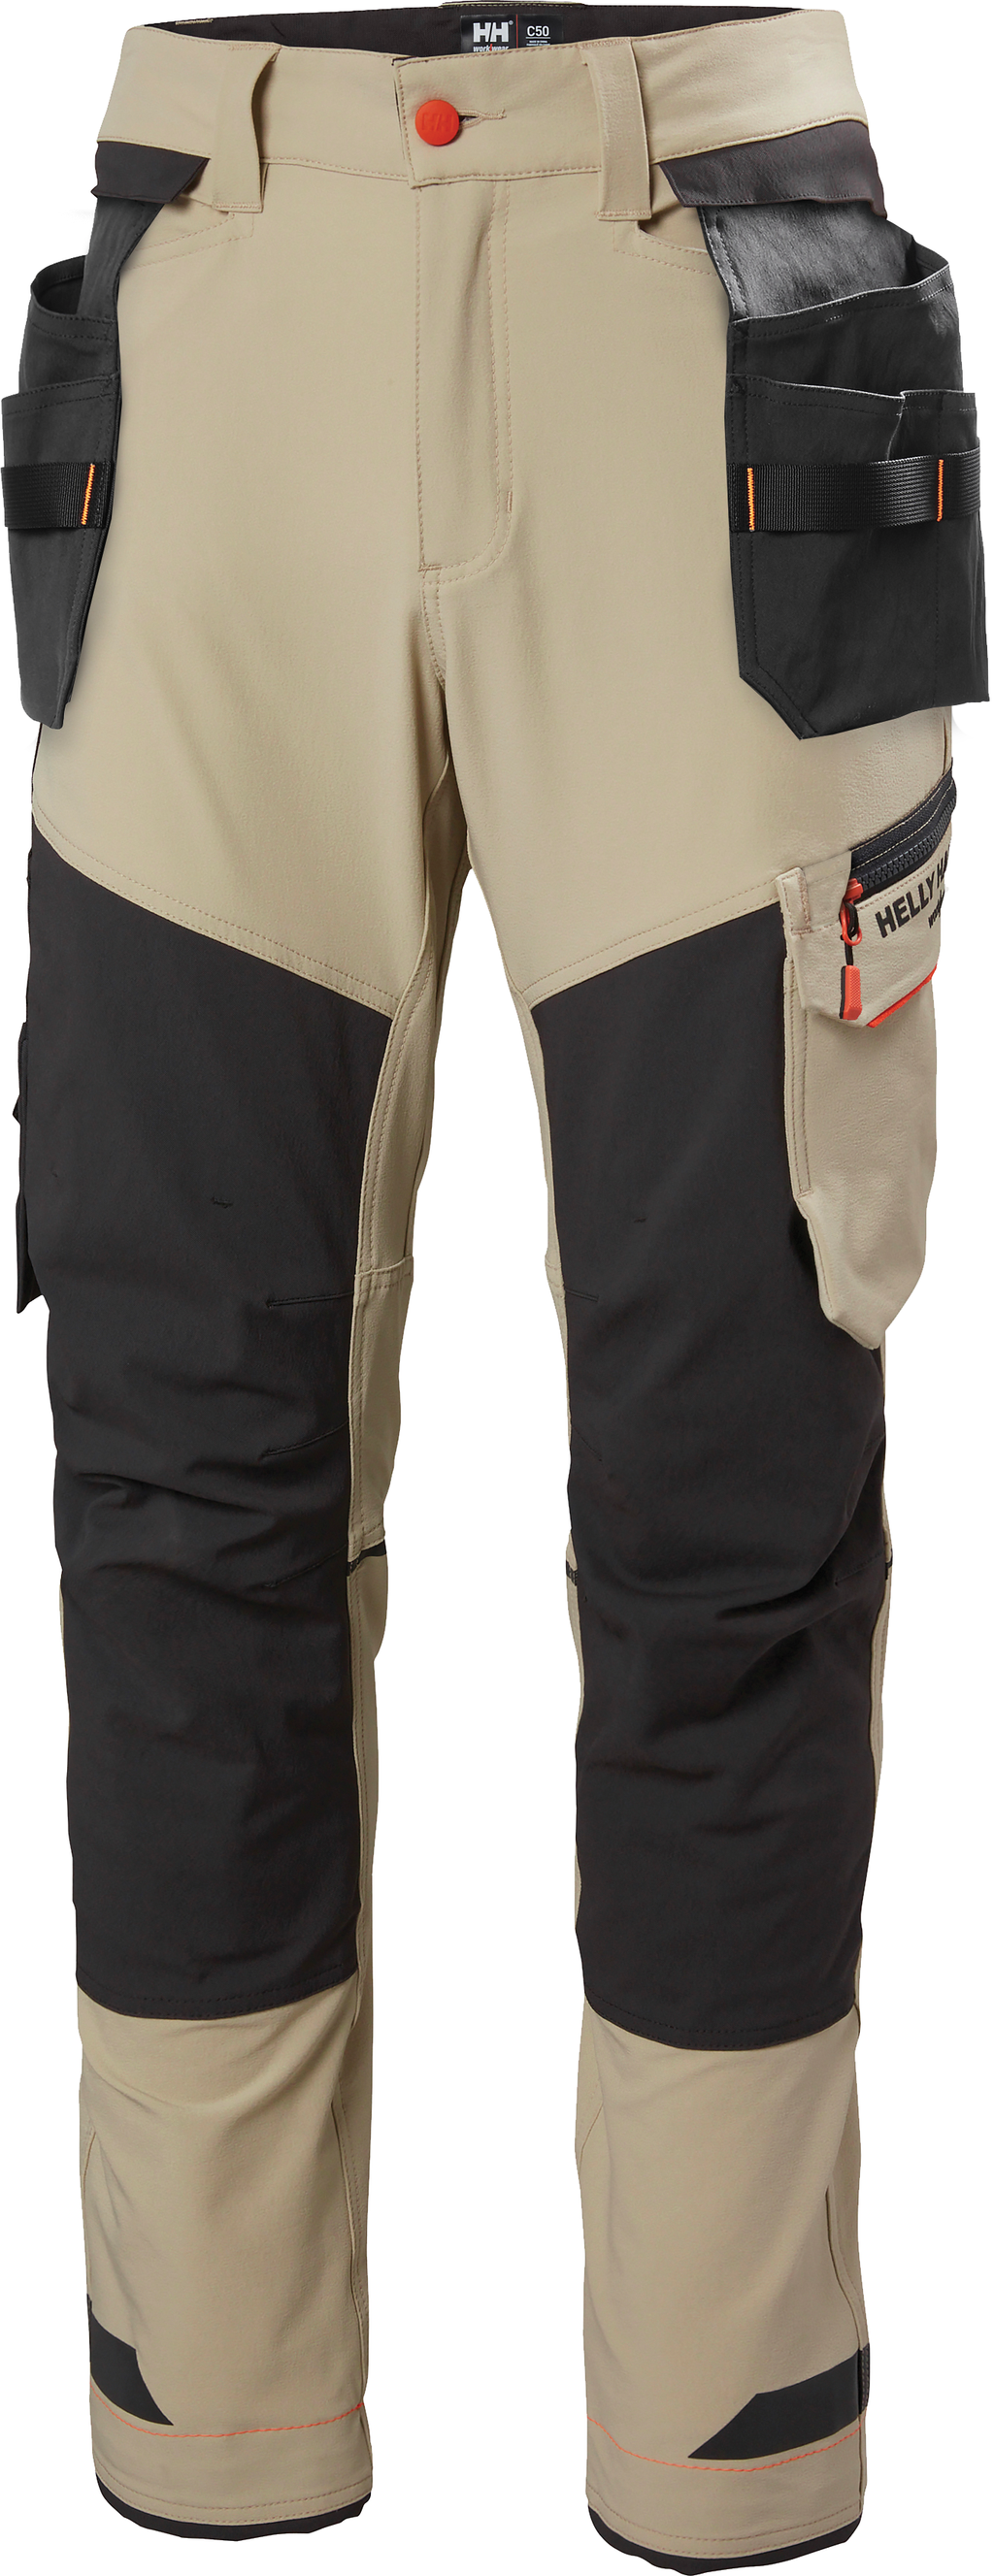 Pantalone da lavoro - 77550 - Helly Hansen Work Wear - per pista  aeroportuale / alta visibilità